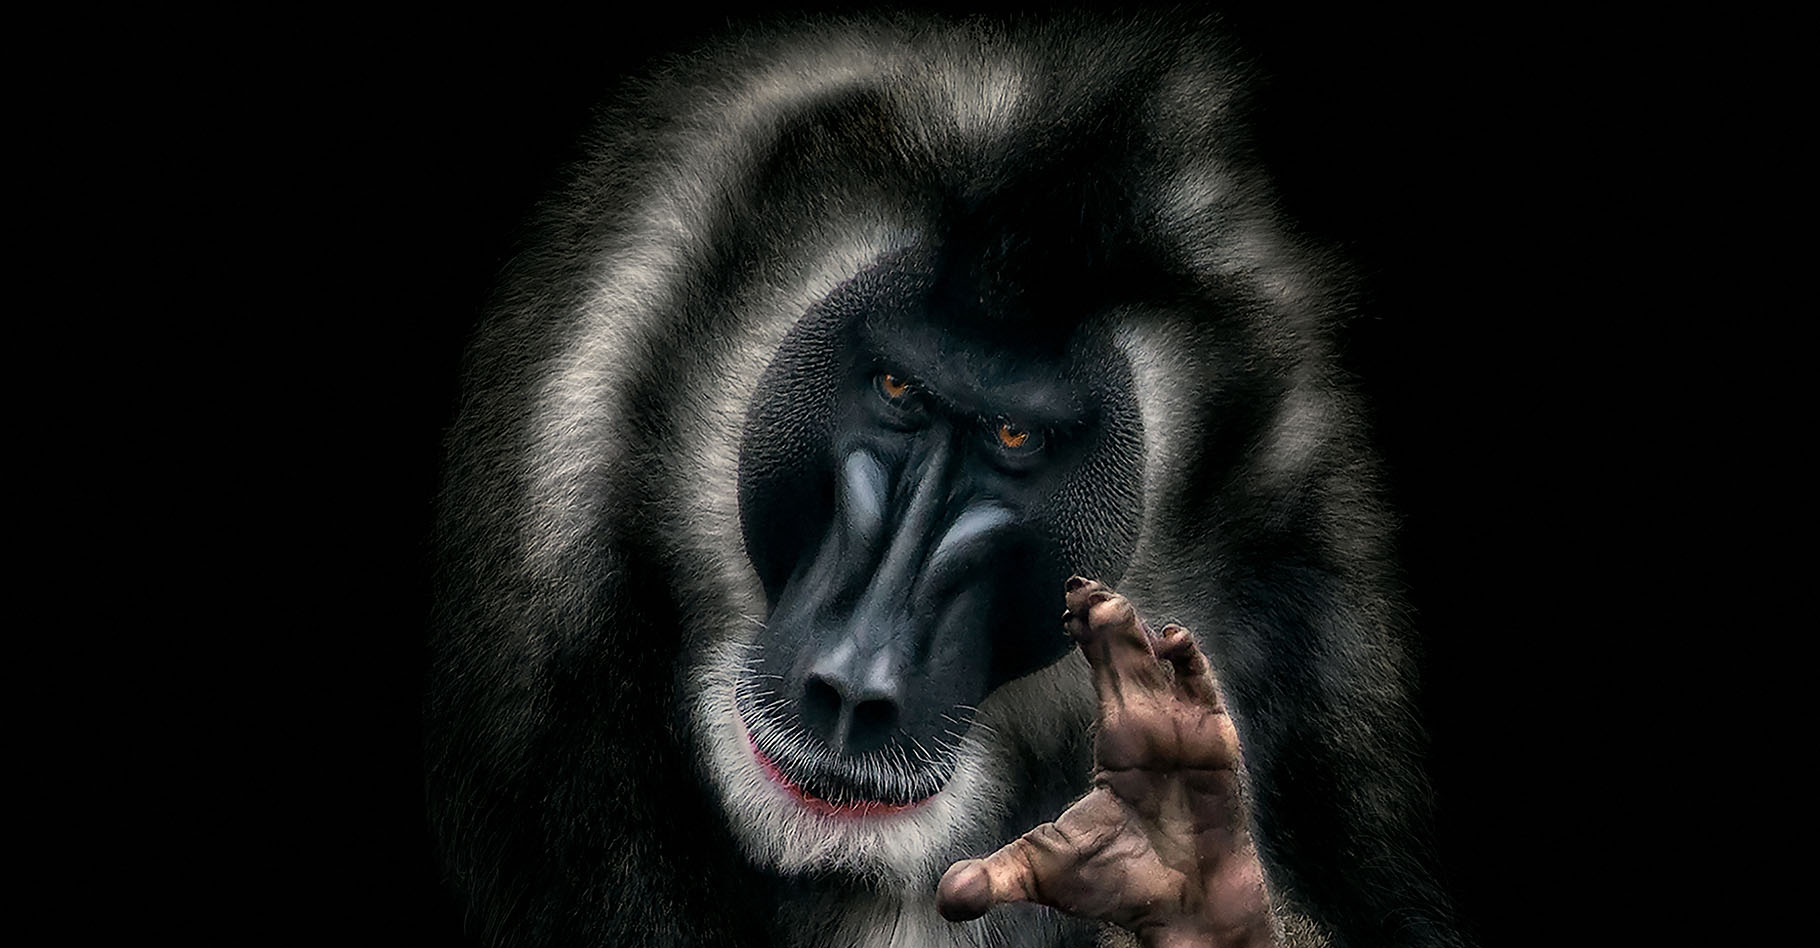 Un mandrill au regard humain pour sensibiliser à la déforestation. © Pedro Jarque Krebs